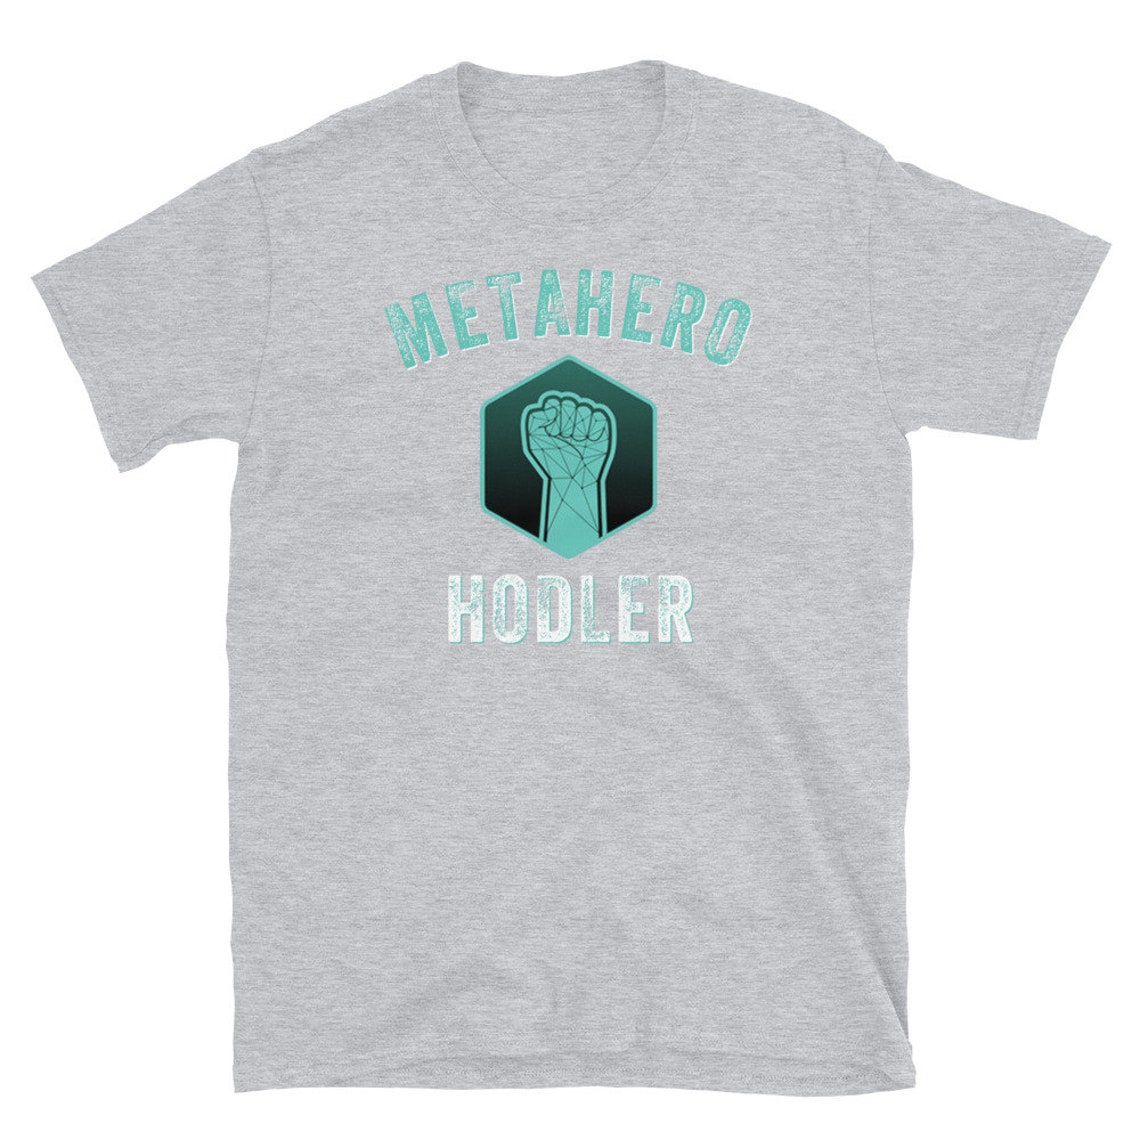 MetaHero Shirt MetaHero Crypto HERO Crypto MetaHero Coin ...